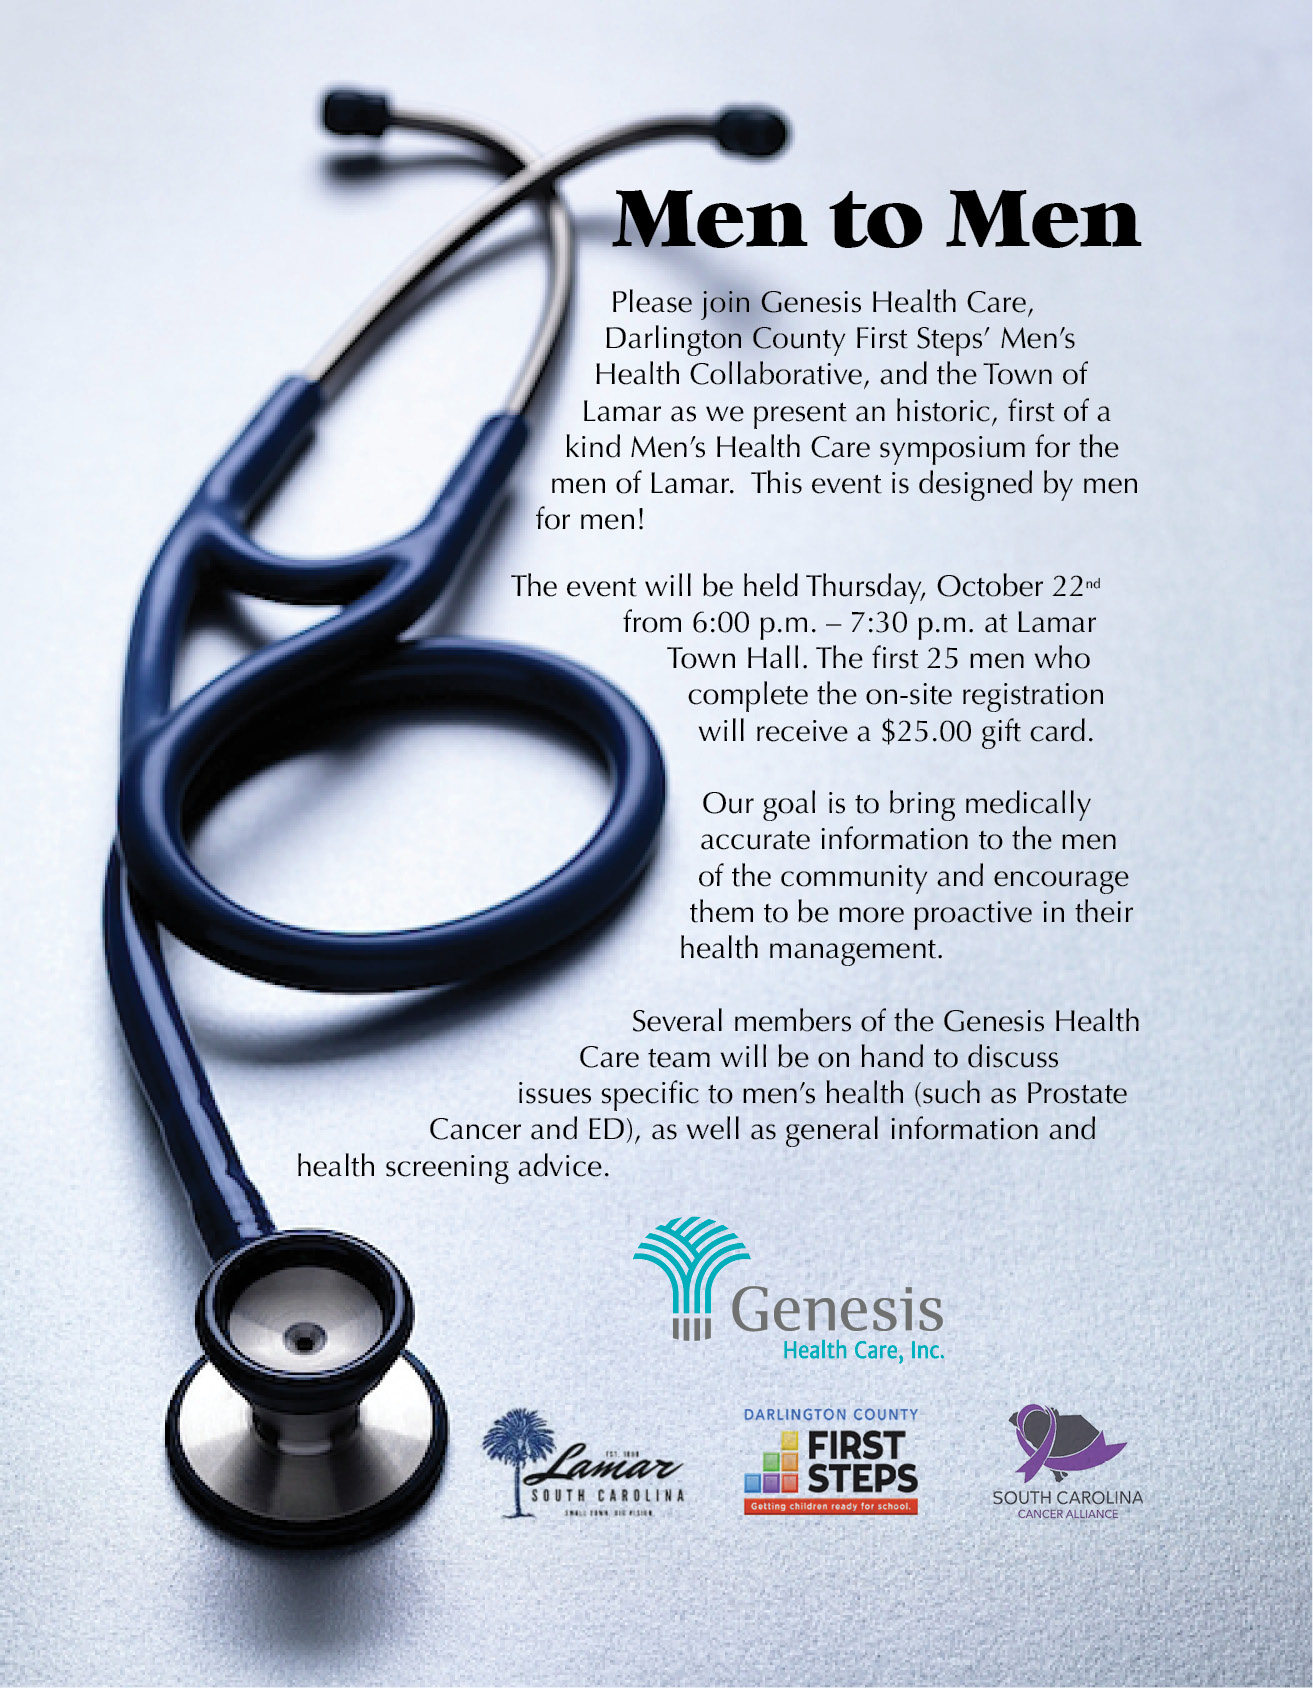 Men to Men Health Care Symposium